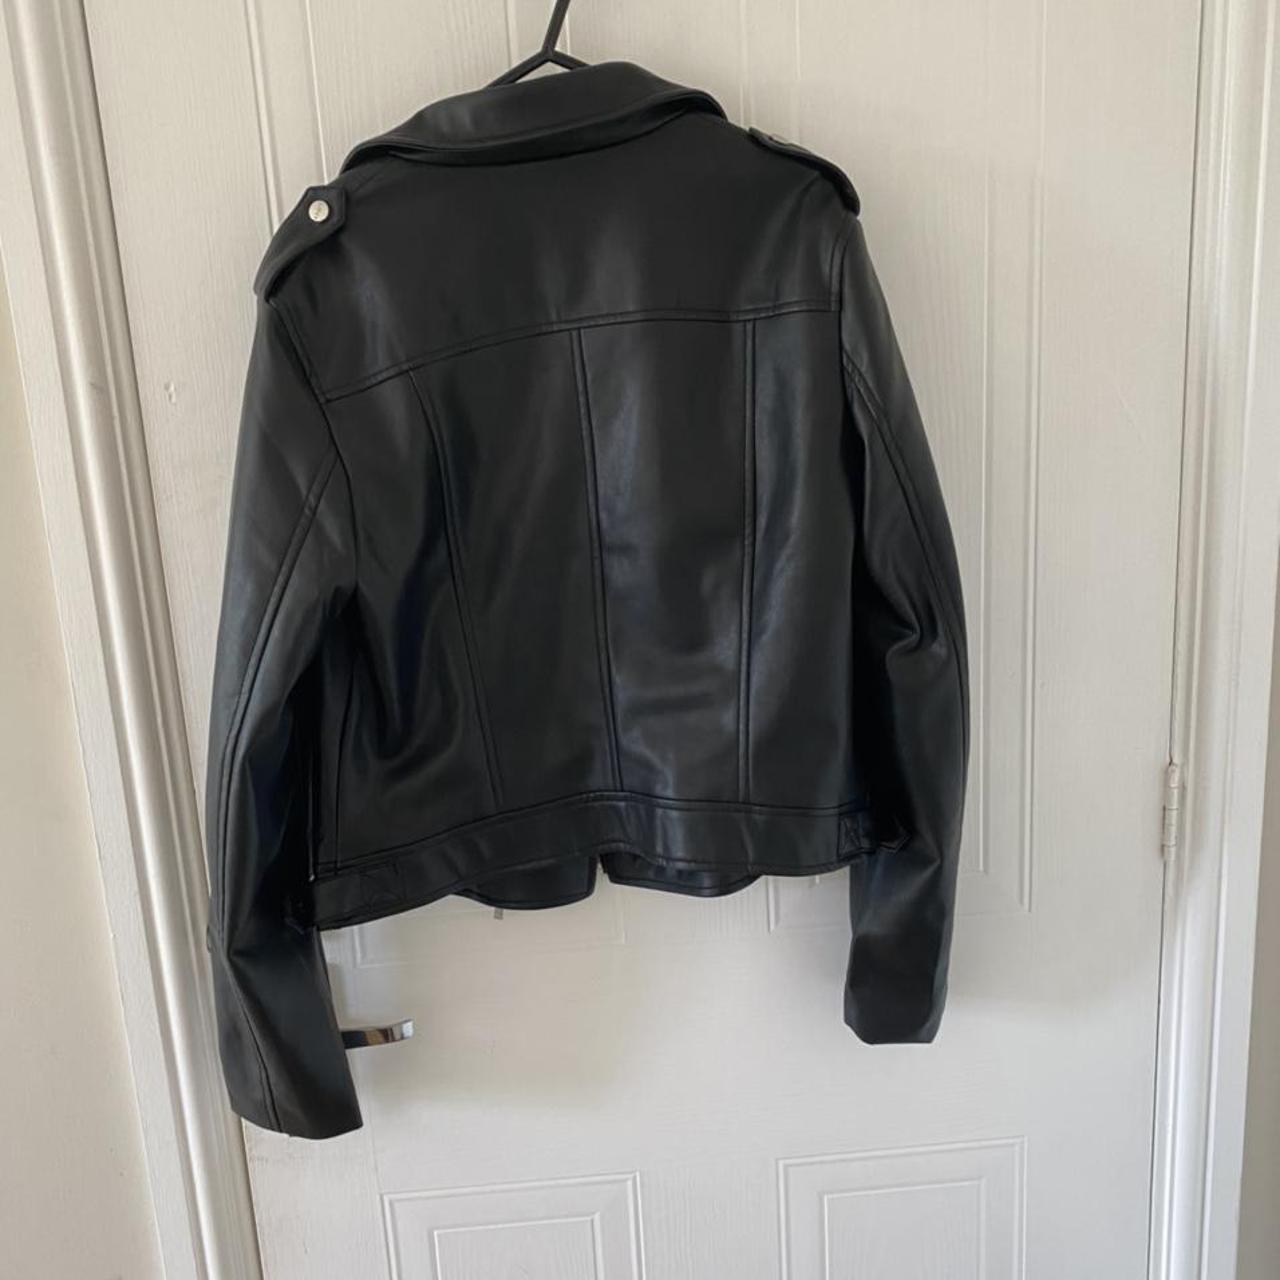 Lipsy Faux Leather Biker Jacket Size 12 Black... - Depop